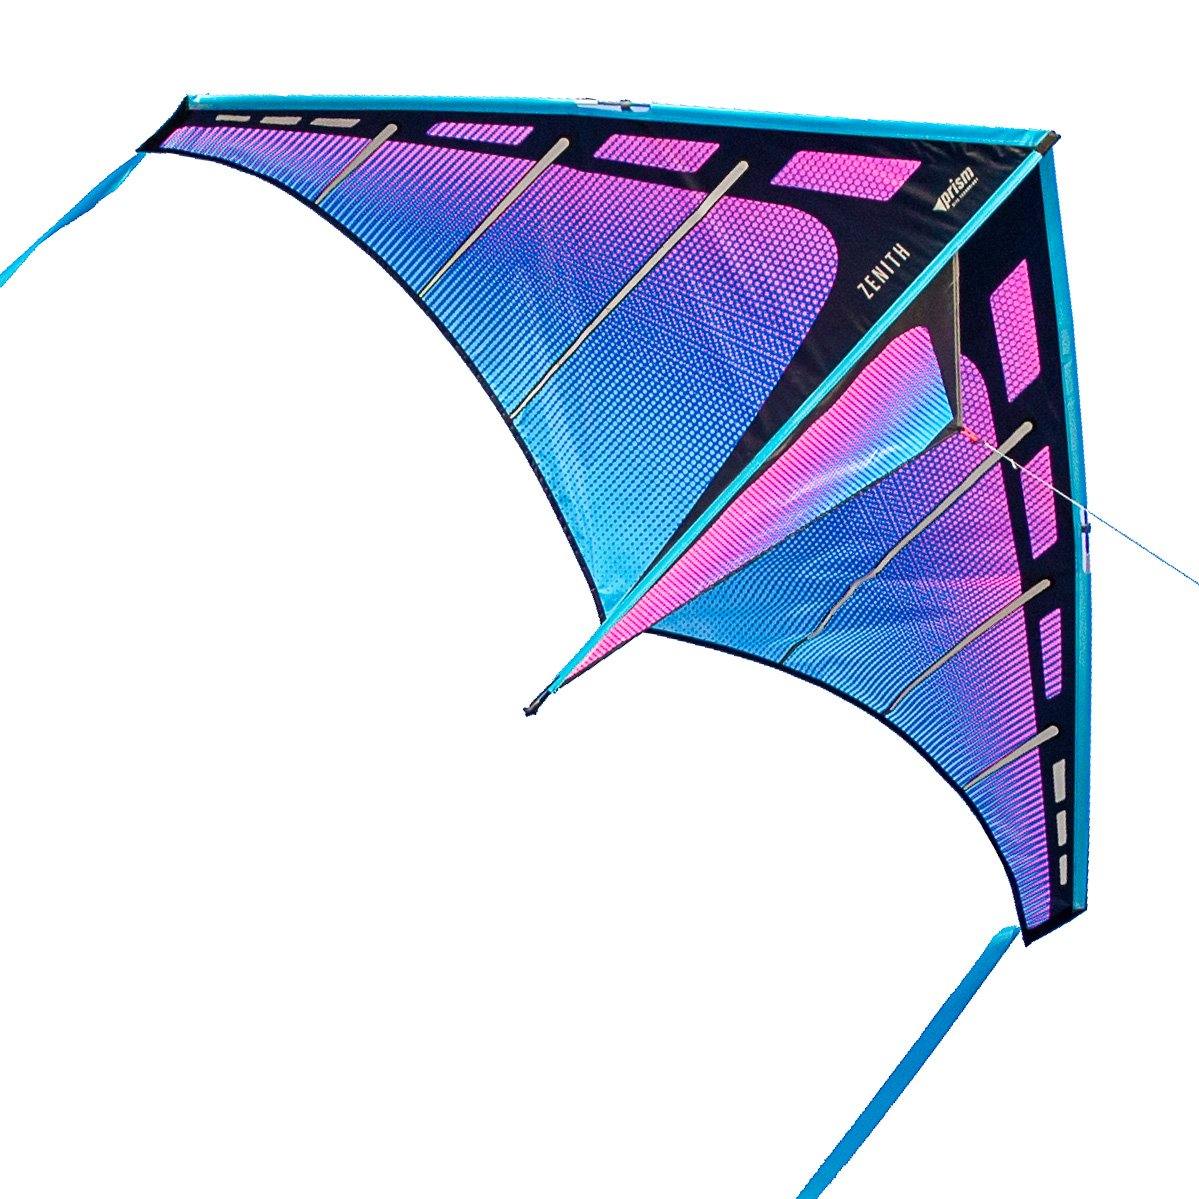 Prism - Zenith 5 – Kitty Hawk Kites Online Store